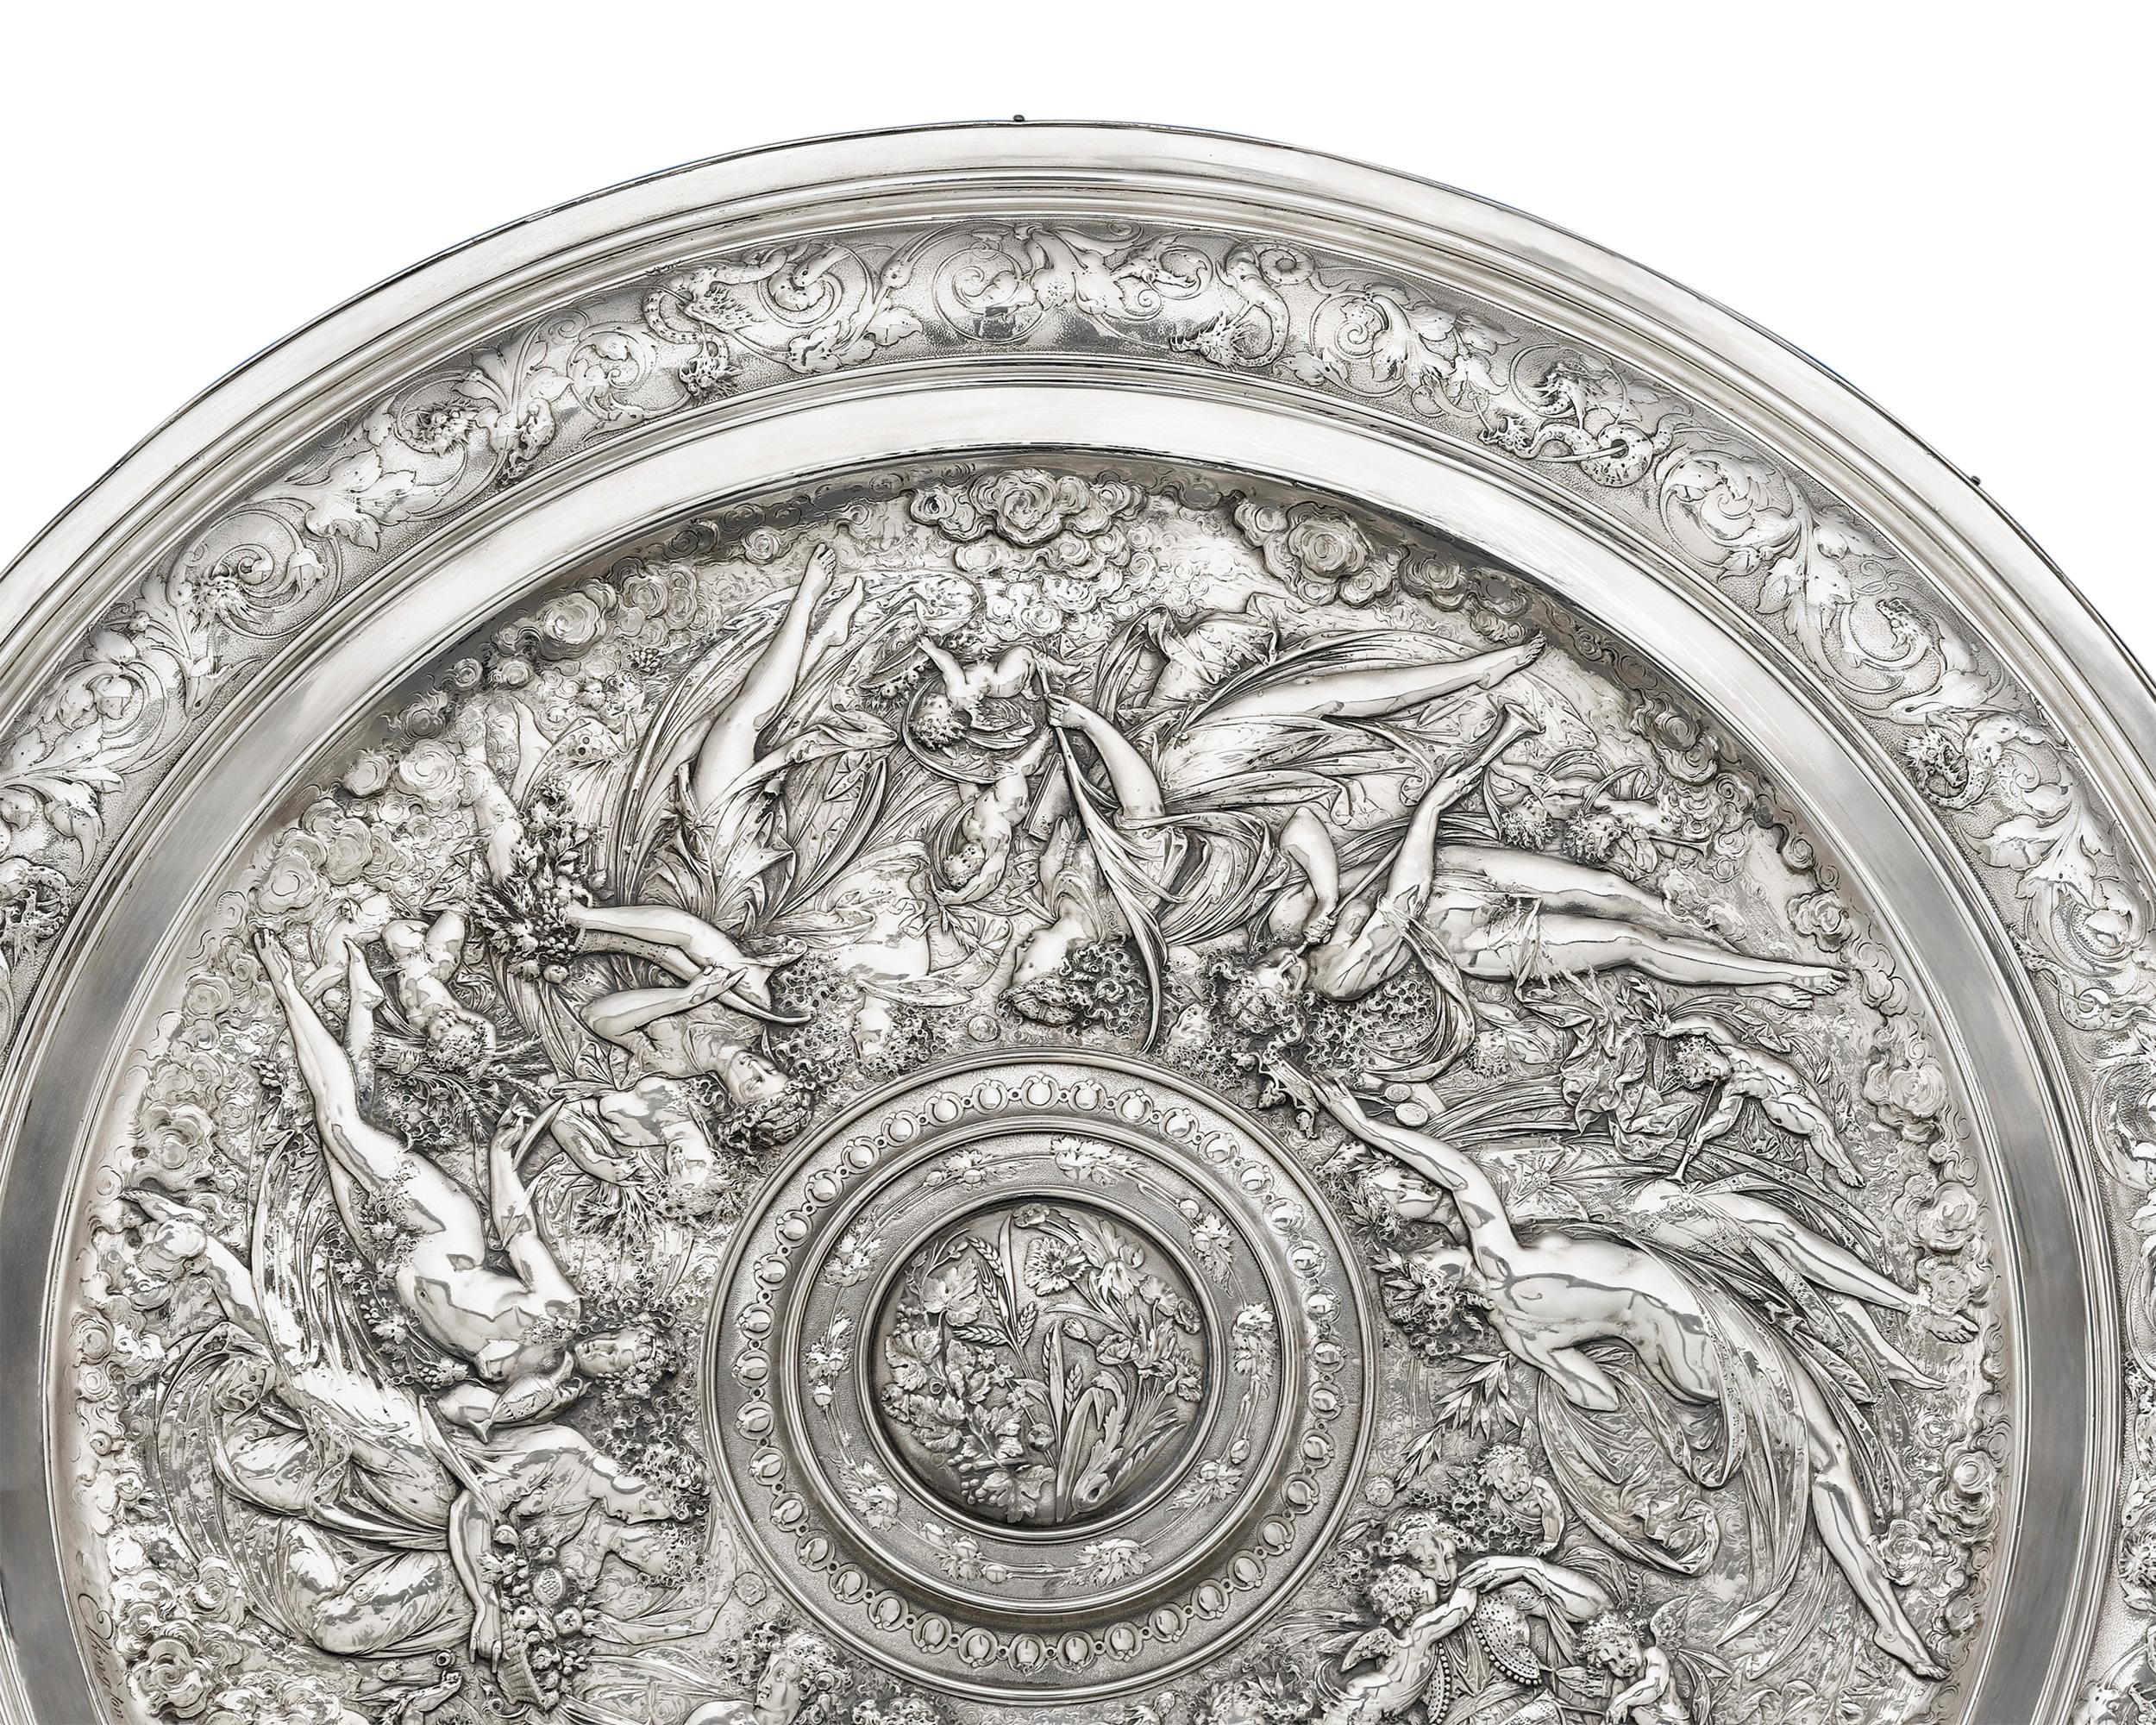 Dieses bedeutende:: von dem französischen Künstler Léonard Morel-Ladeuil modellierte Silberbesteck basiert auf dem Originalentwurf des Bildhauers für ein Hochzeitsgeschenk an den Prinzen und die Prinzessin von Wales. Das exquisite Stück wurde von